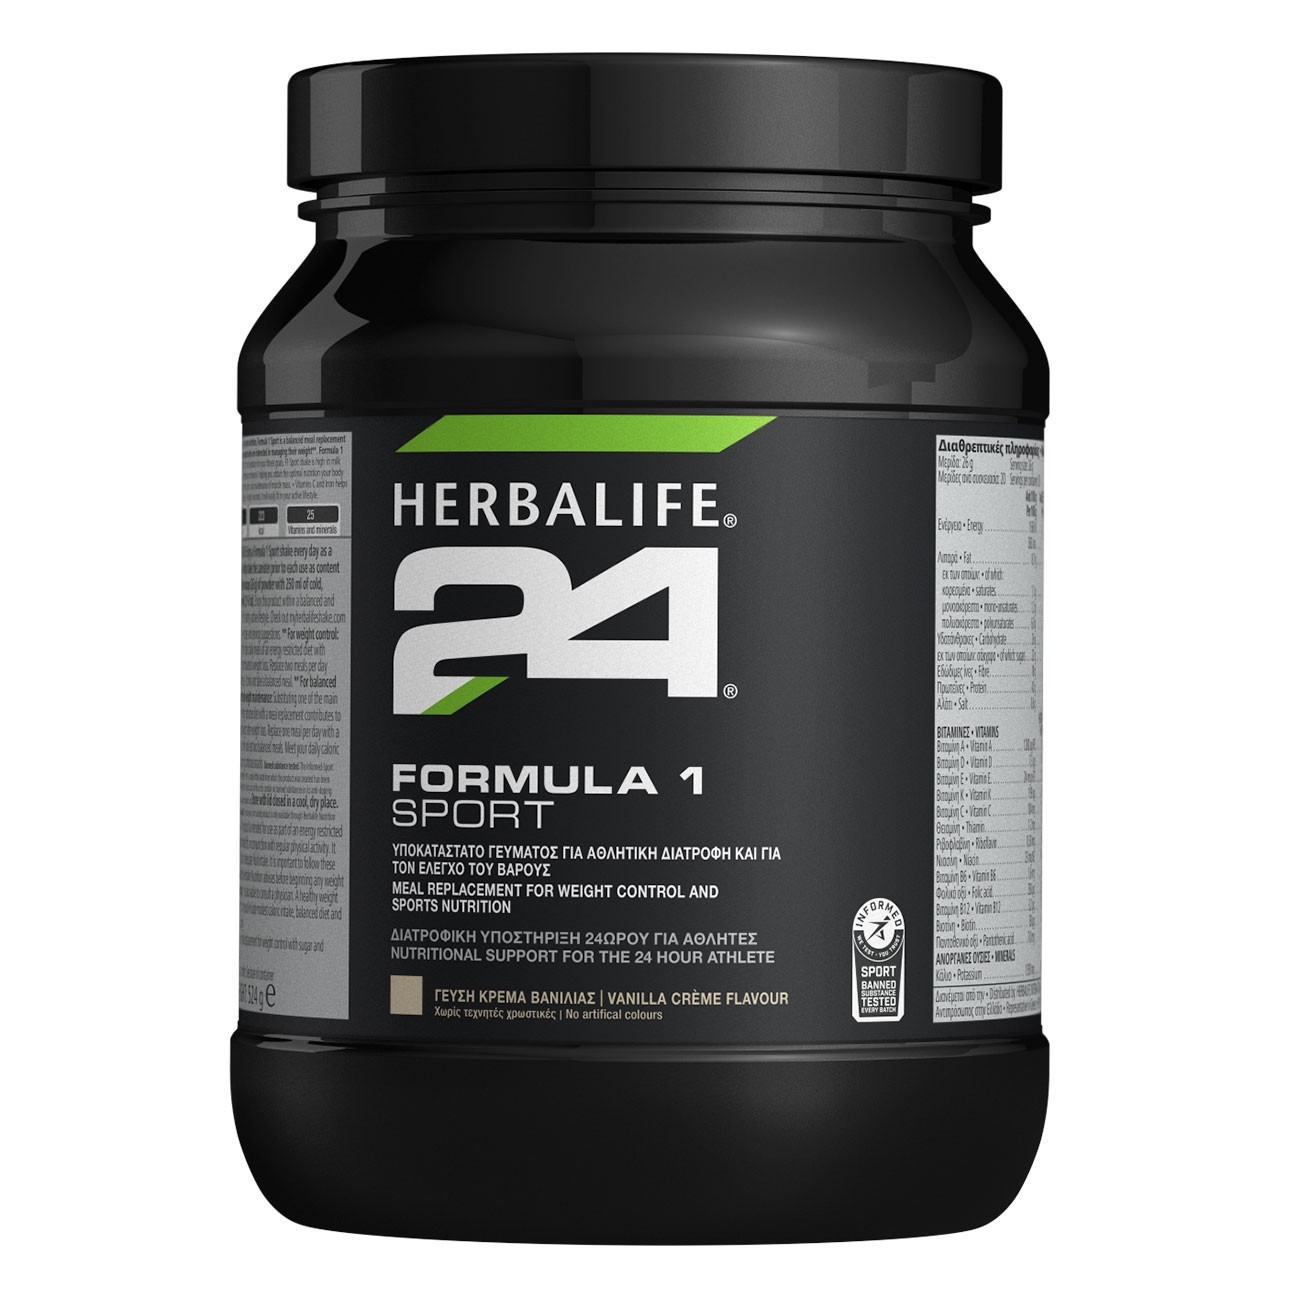 Herbalife24® Formula 1 Sport Πρωτεϊνούχο Ρόφημα